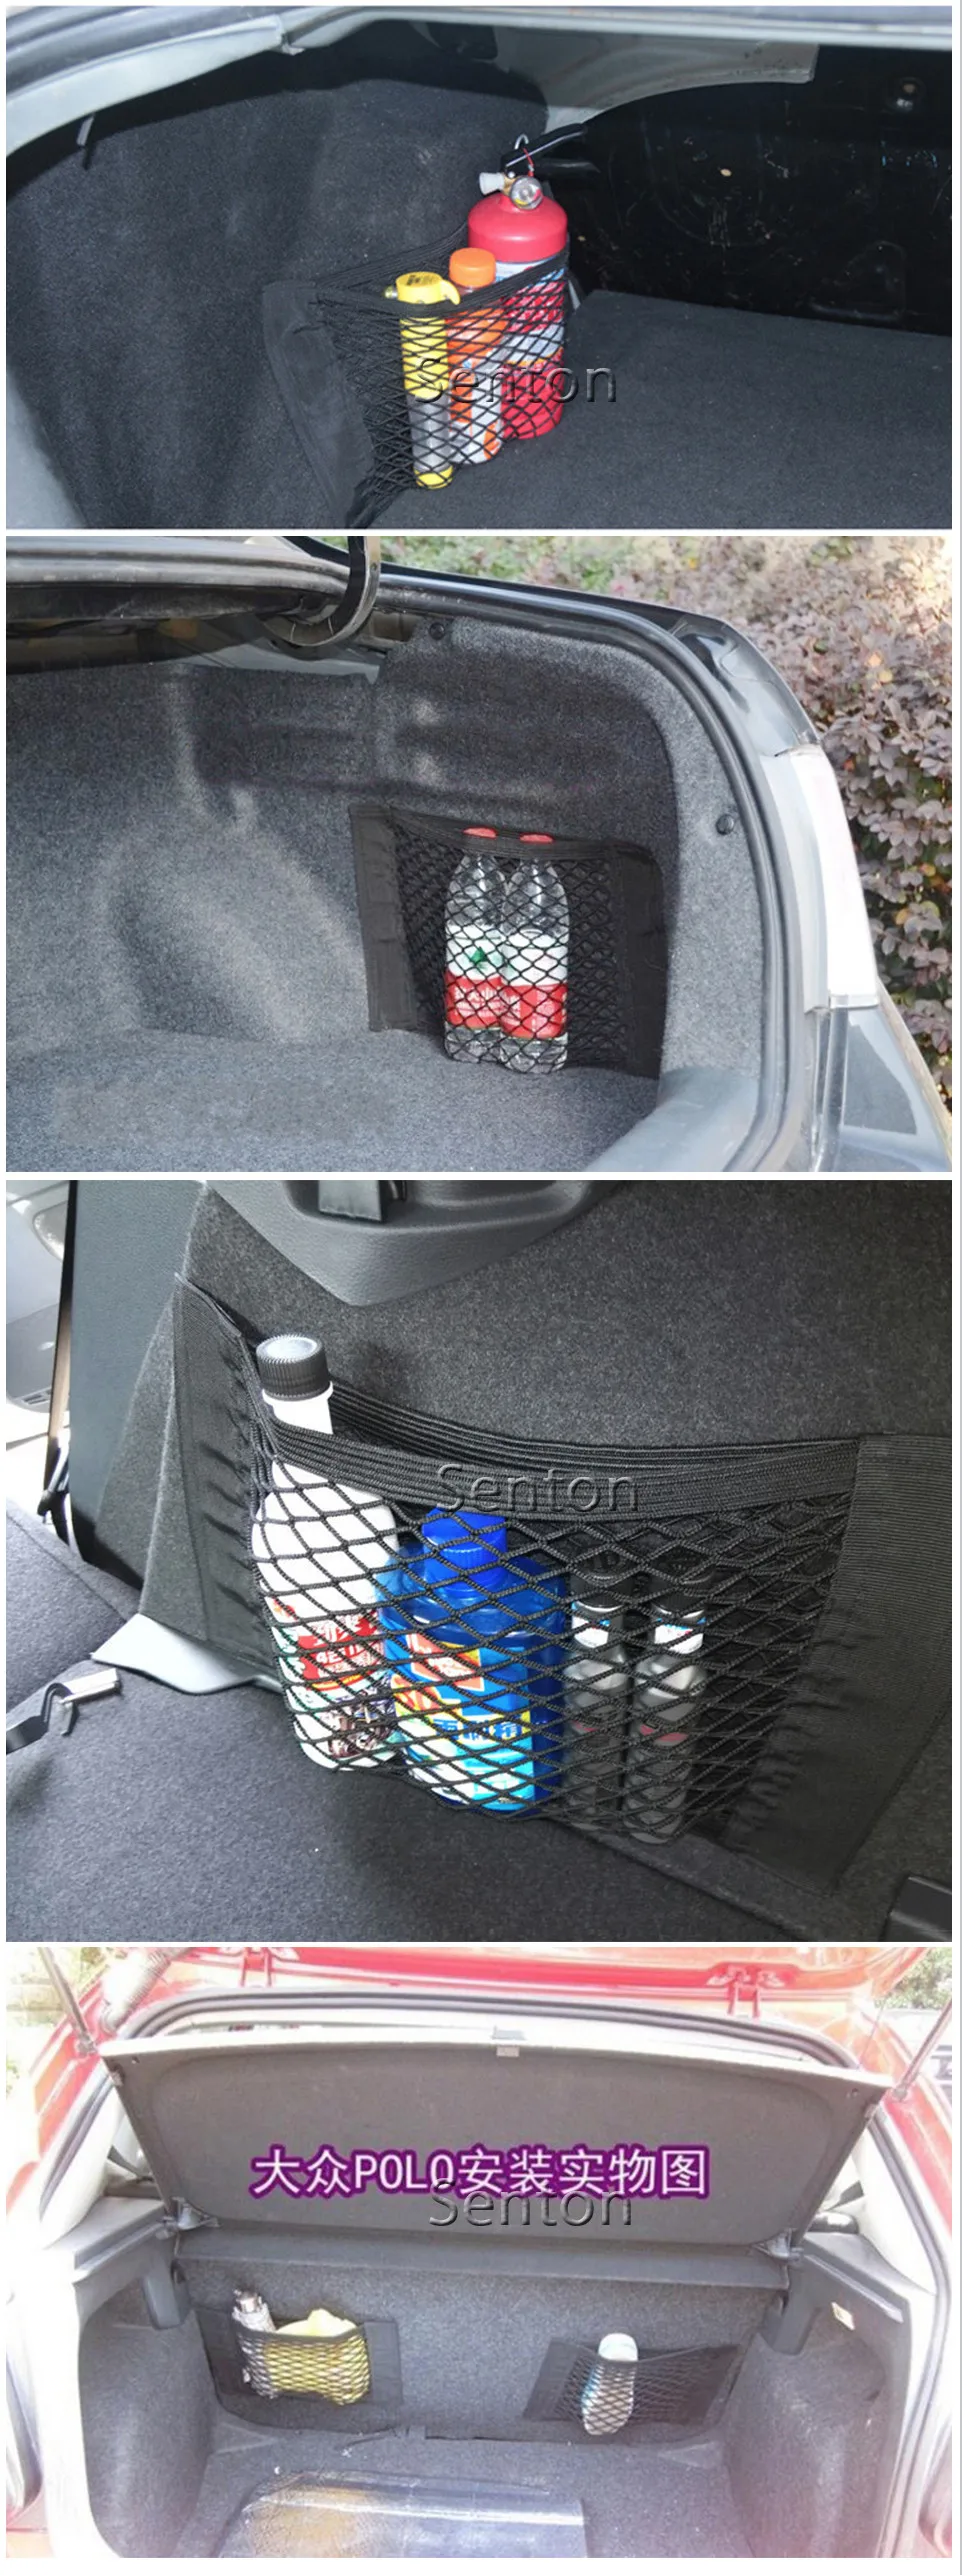 Багажная сетка для багажника автомобиля для Audi A4 B5 B6 B8 A6 C5 C6 A3 A5 Q3 Q5 Q7 BMW E46 E39 E90 E36 E60 E34 E30 F30 F10 X5 E53 X6 аксессуары